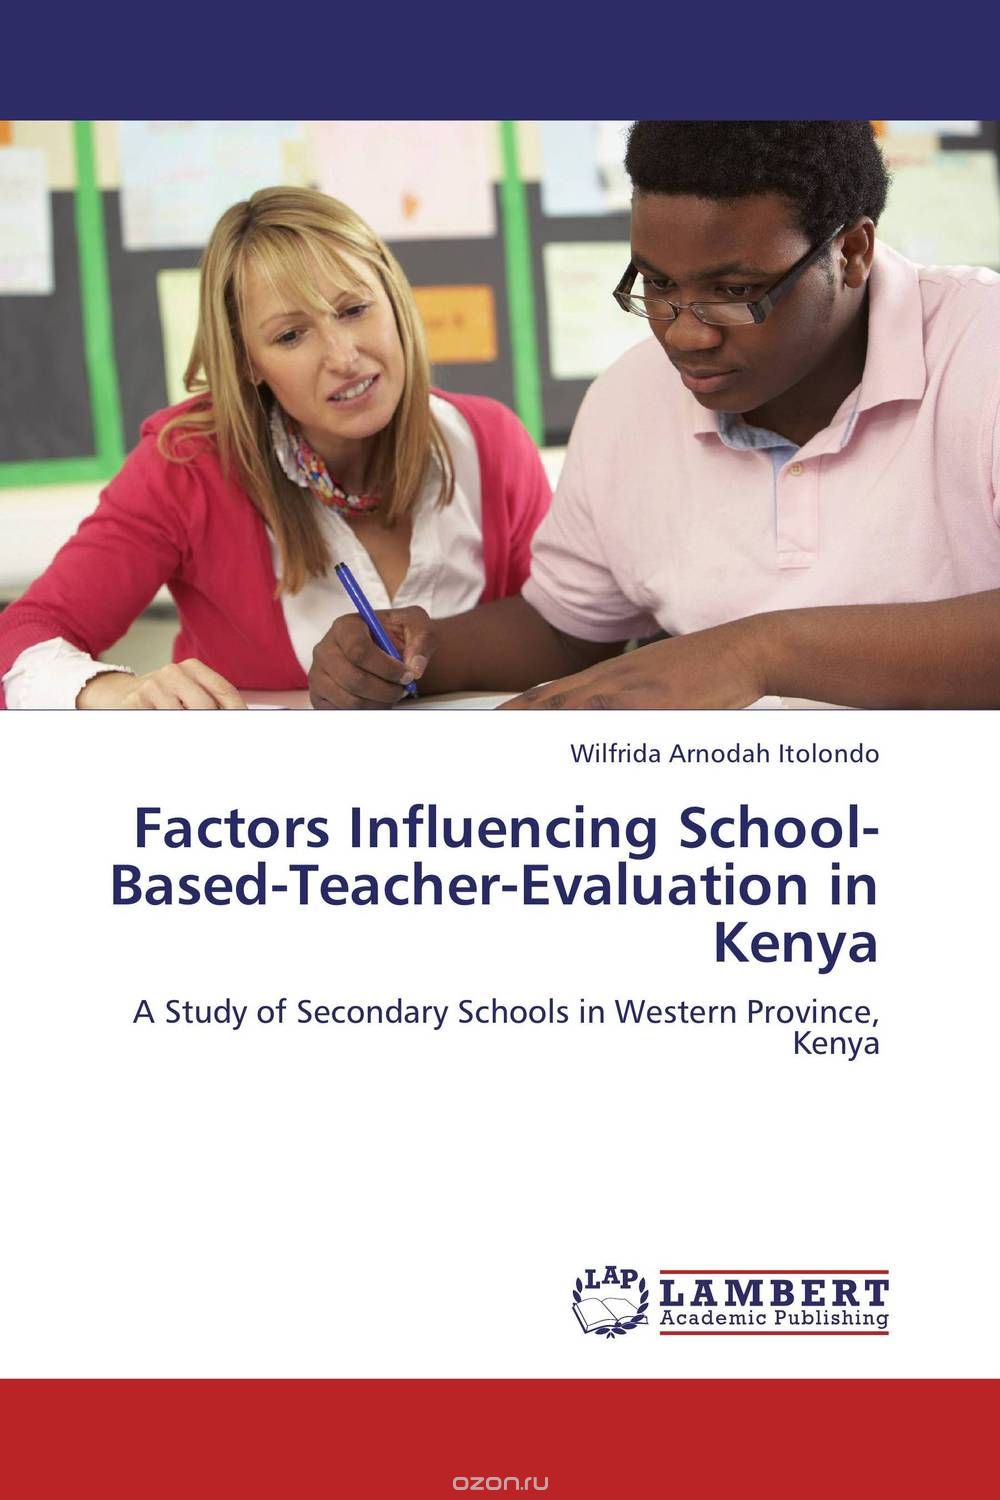 Factors Influencing School-Based-Teacher-Evaluation in Kenya